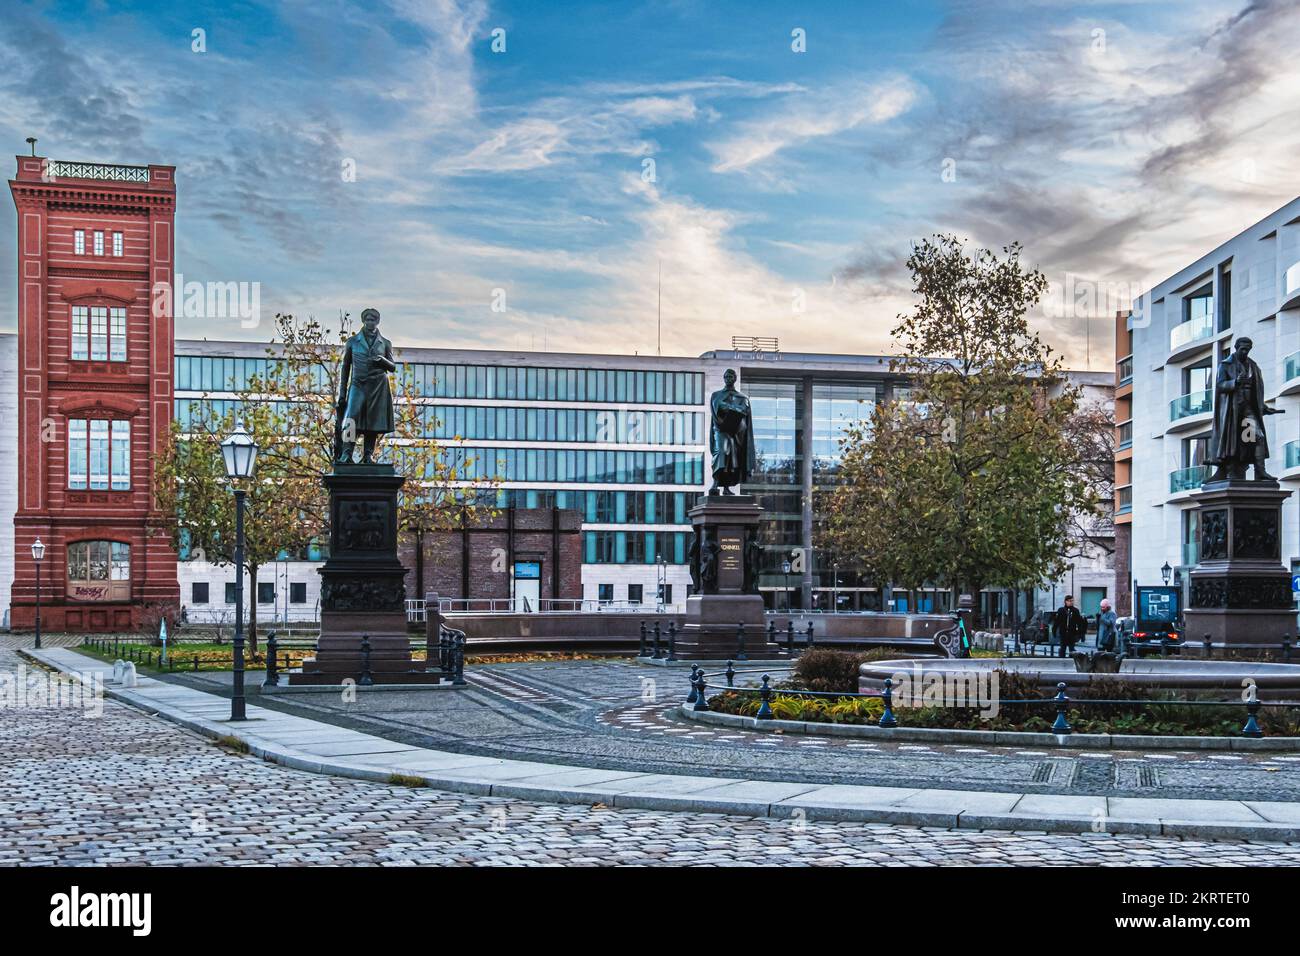 SchinkelplatzMitte, Berlín. Plaza con esquina reconstruida de la fachada de Bauakedemie y estatuas conmemorativas Foto de stock